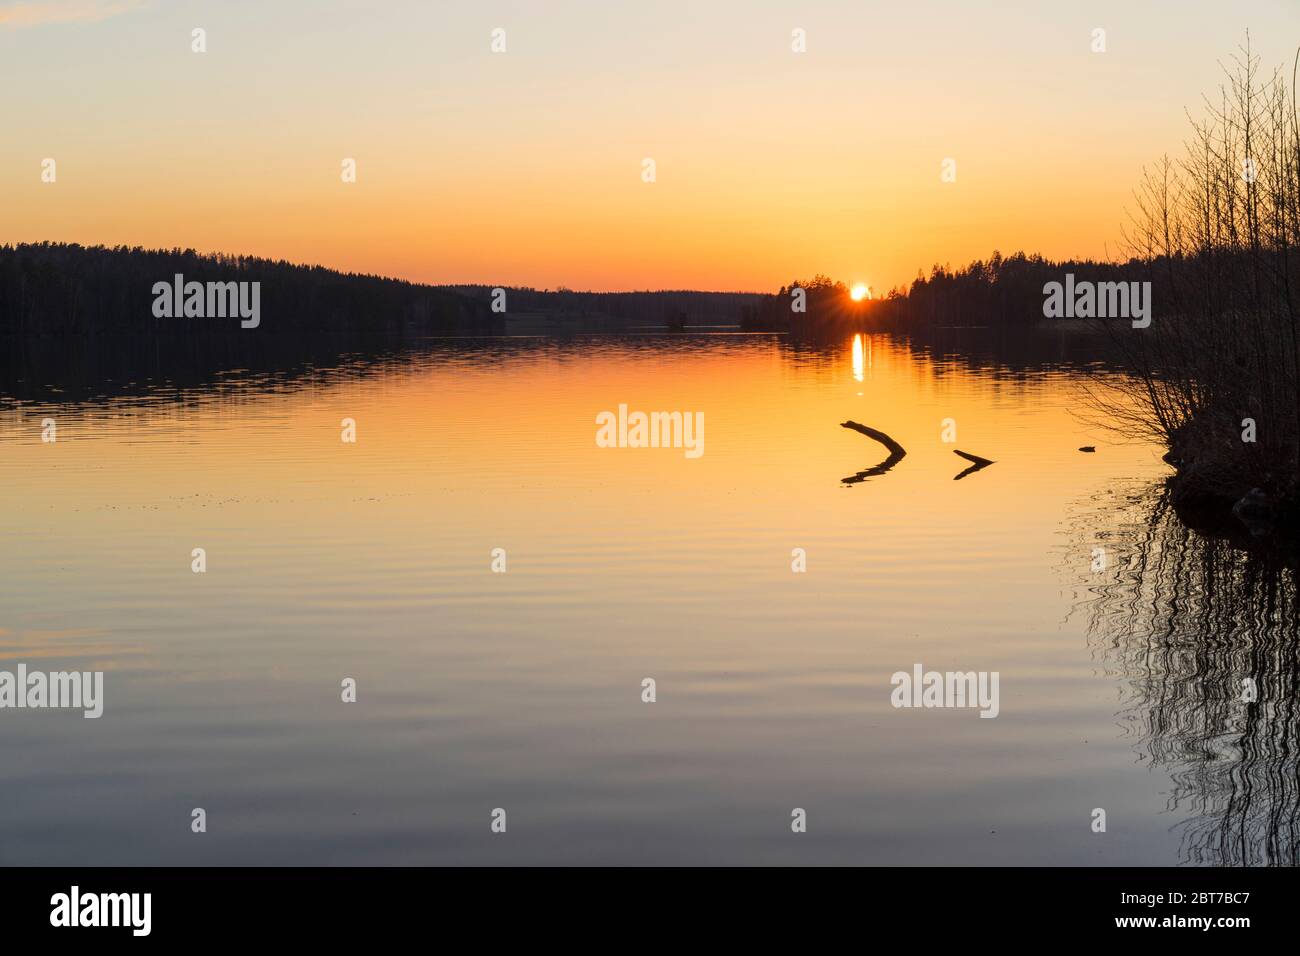 Belle photo de la Suède sur la nature et le paysage. Belle image calme et paisible du coucher de soleil de printemps en plein air scandinave avec lac. Banque D'Images